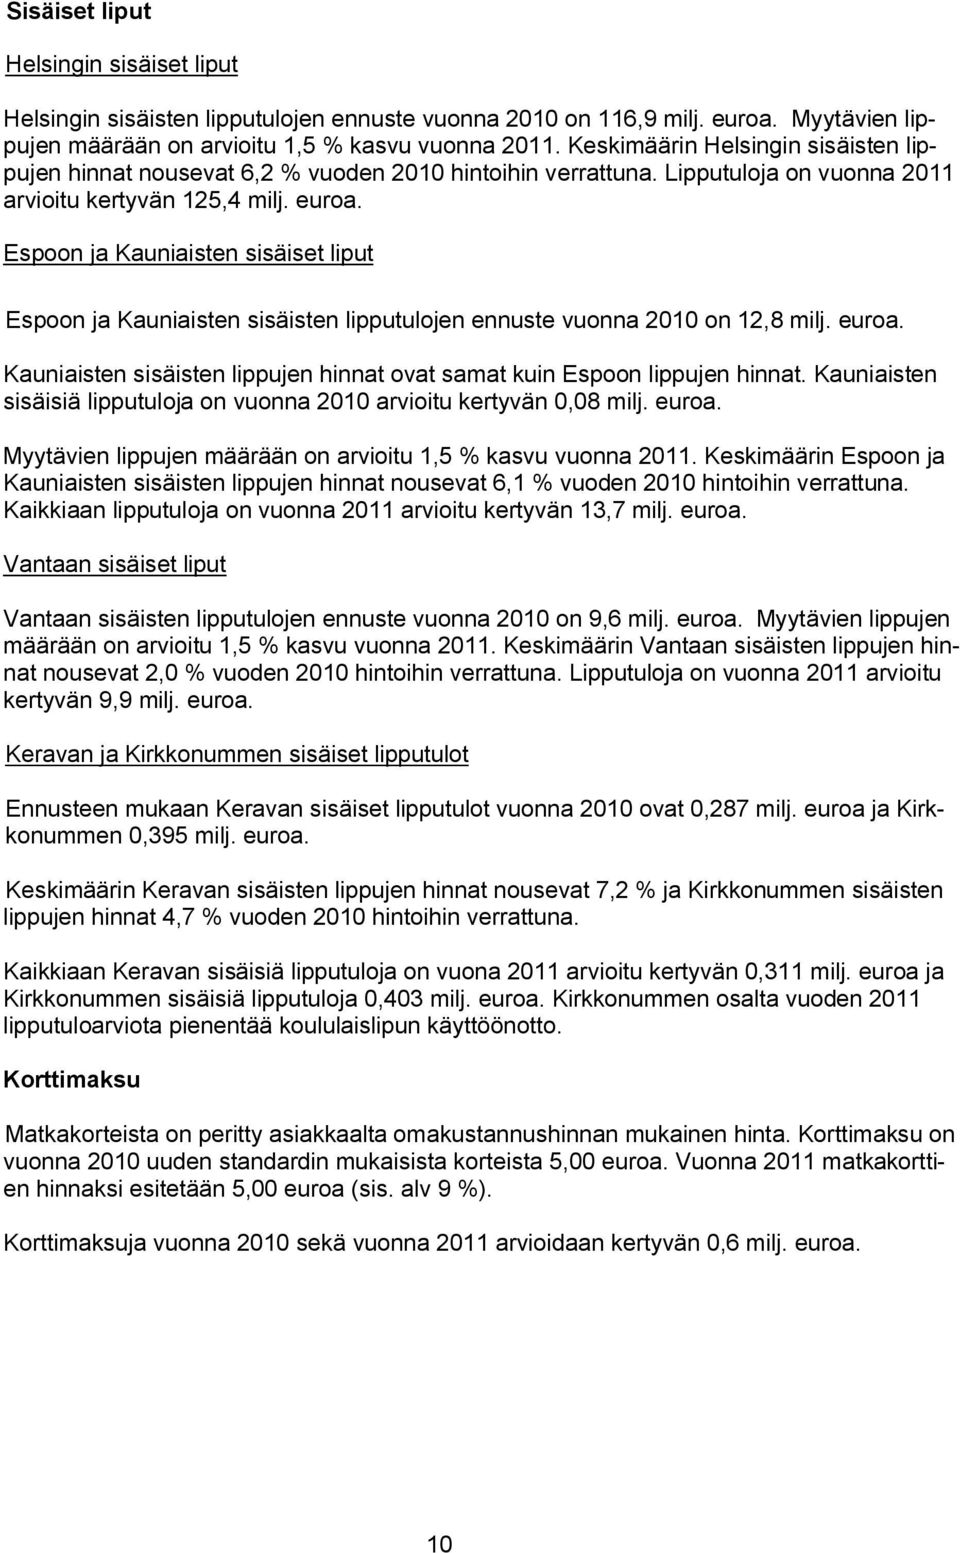 Espoon ja Kauniaisten sisäiset liput Espoon ja Kauniaisten sisäisten lipputulojen ennuste vuonna 2010 on 12,8 milj. euroa. Kauniaisten sisäisten lippujen hinnat ovat samat kuin Espoon lippujen hinnat.